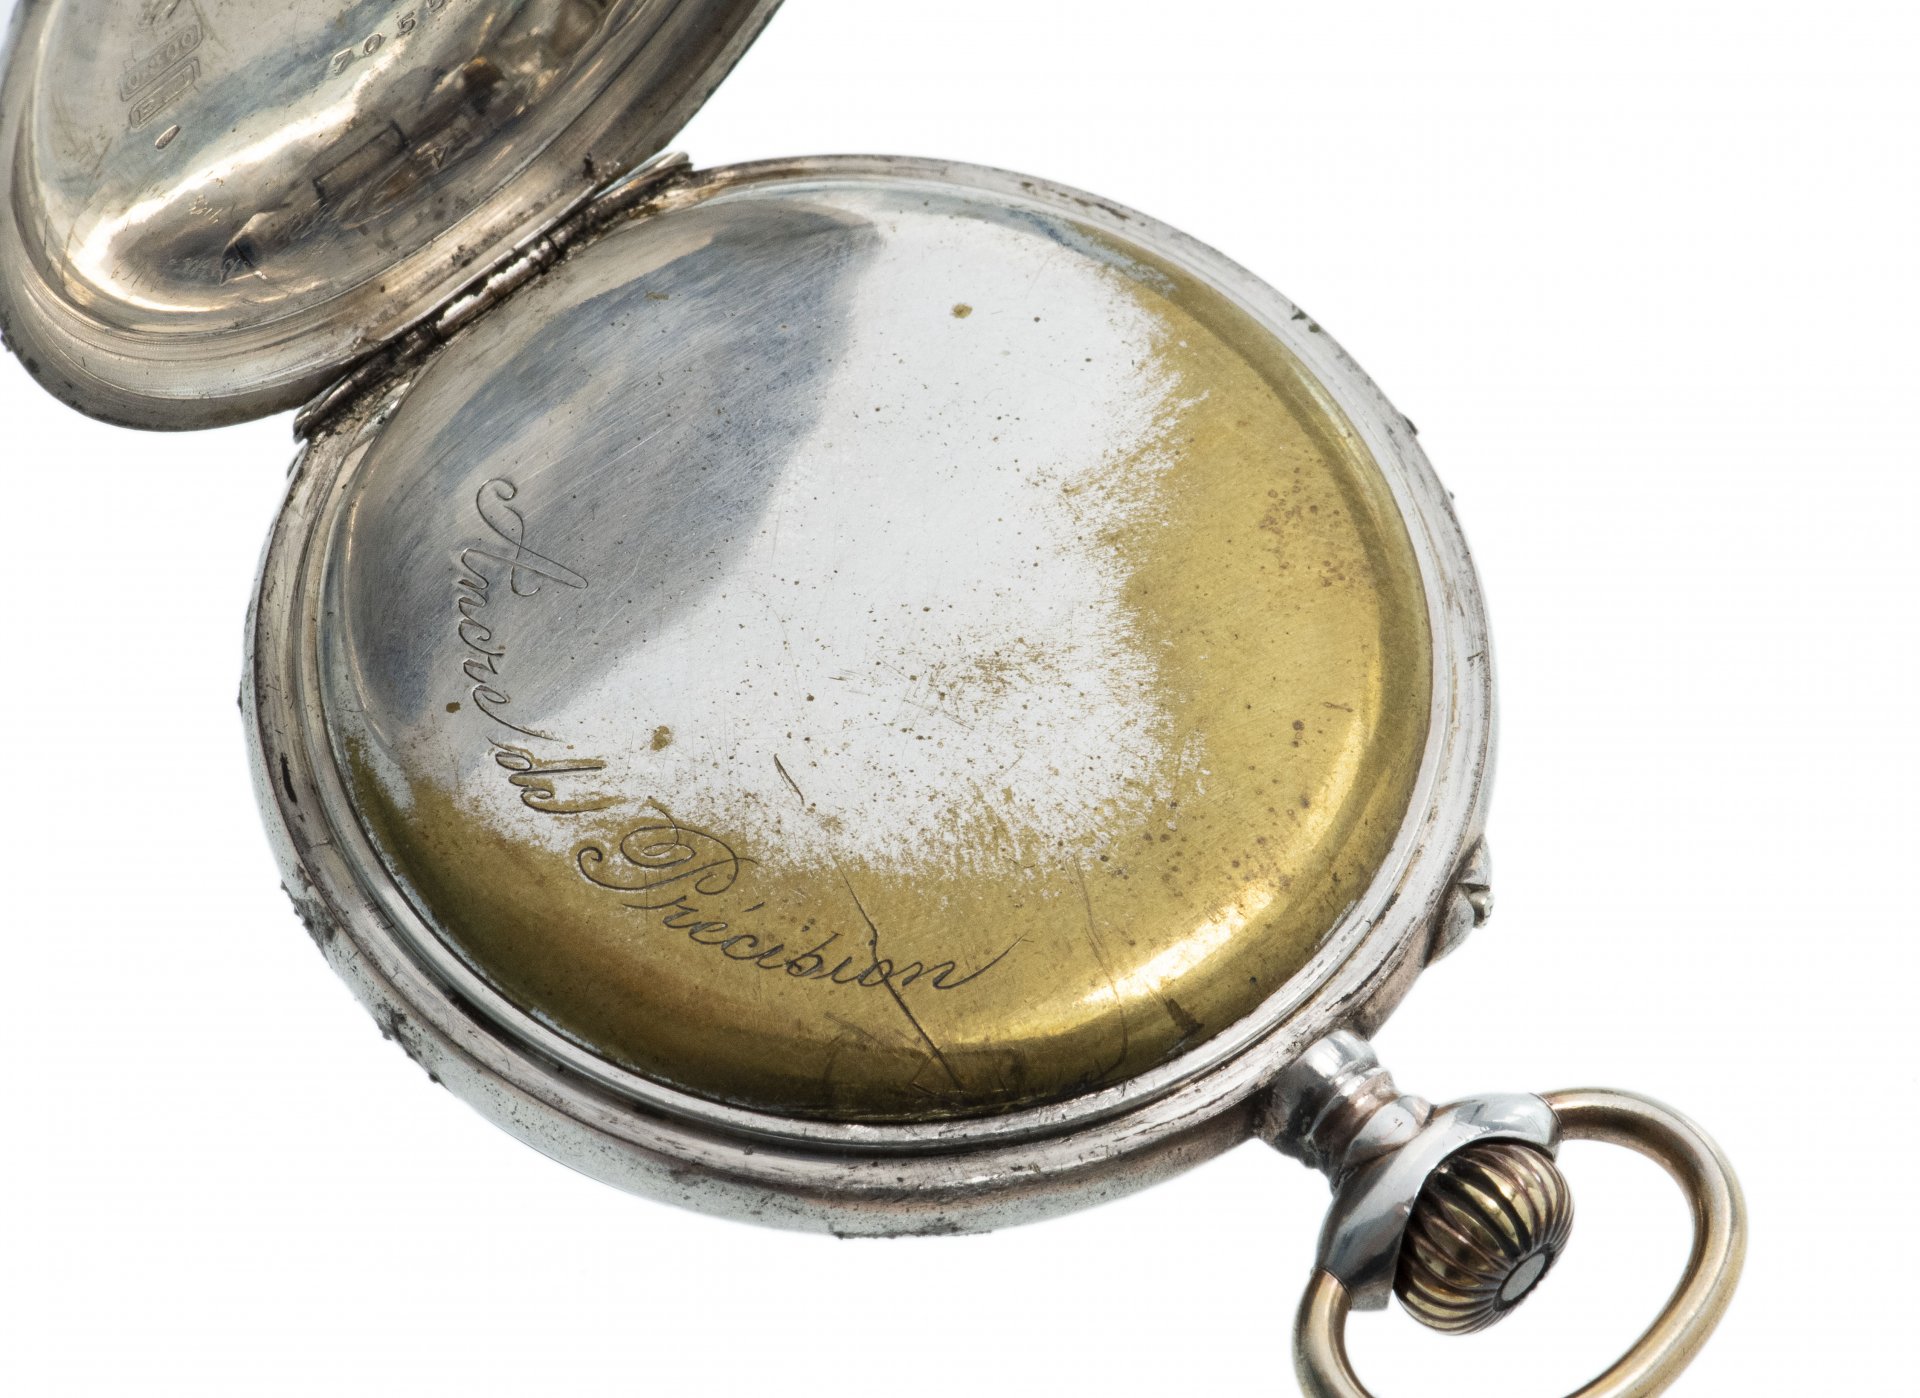 Карманные часы серебро. Часы карманные Bellaria серебряные. Карманные серебряные часы Монарт. Немецкие карманные часы exakt серебряные 800. Карманные часы 1900-1920г немецкие.